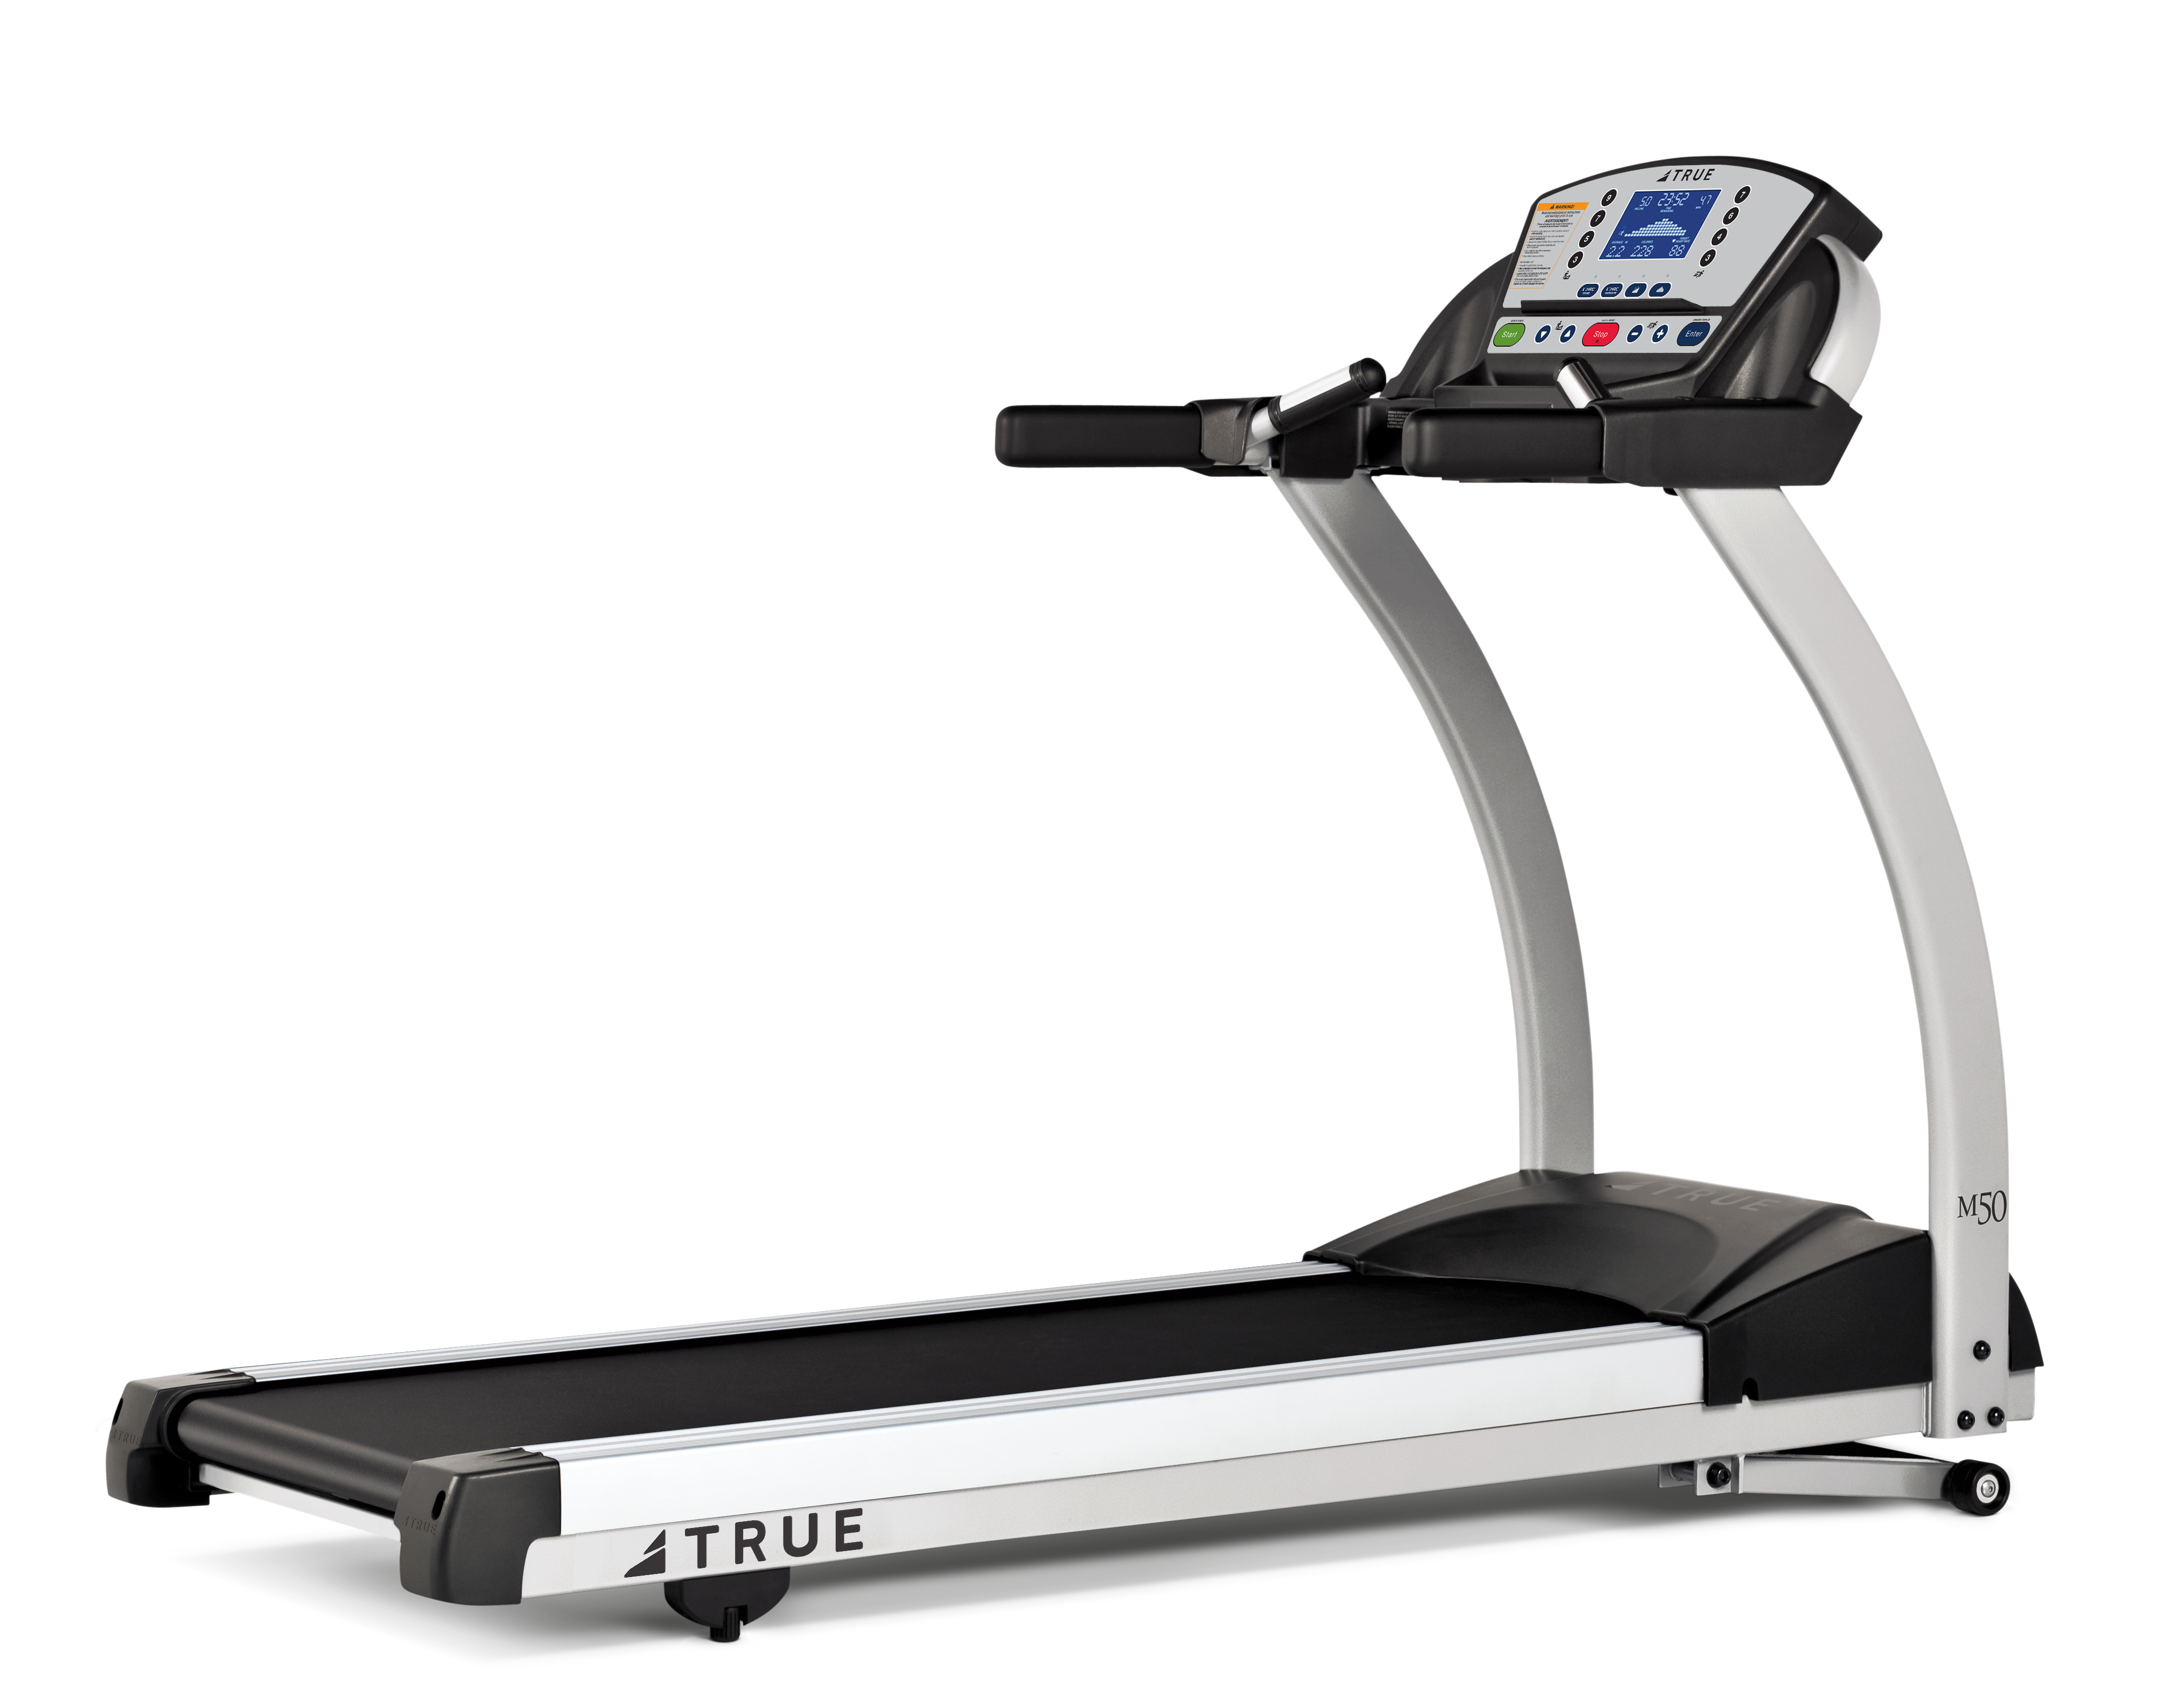 TRUE TM50 treadmill